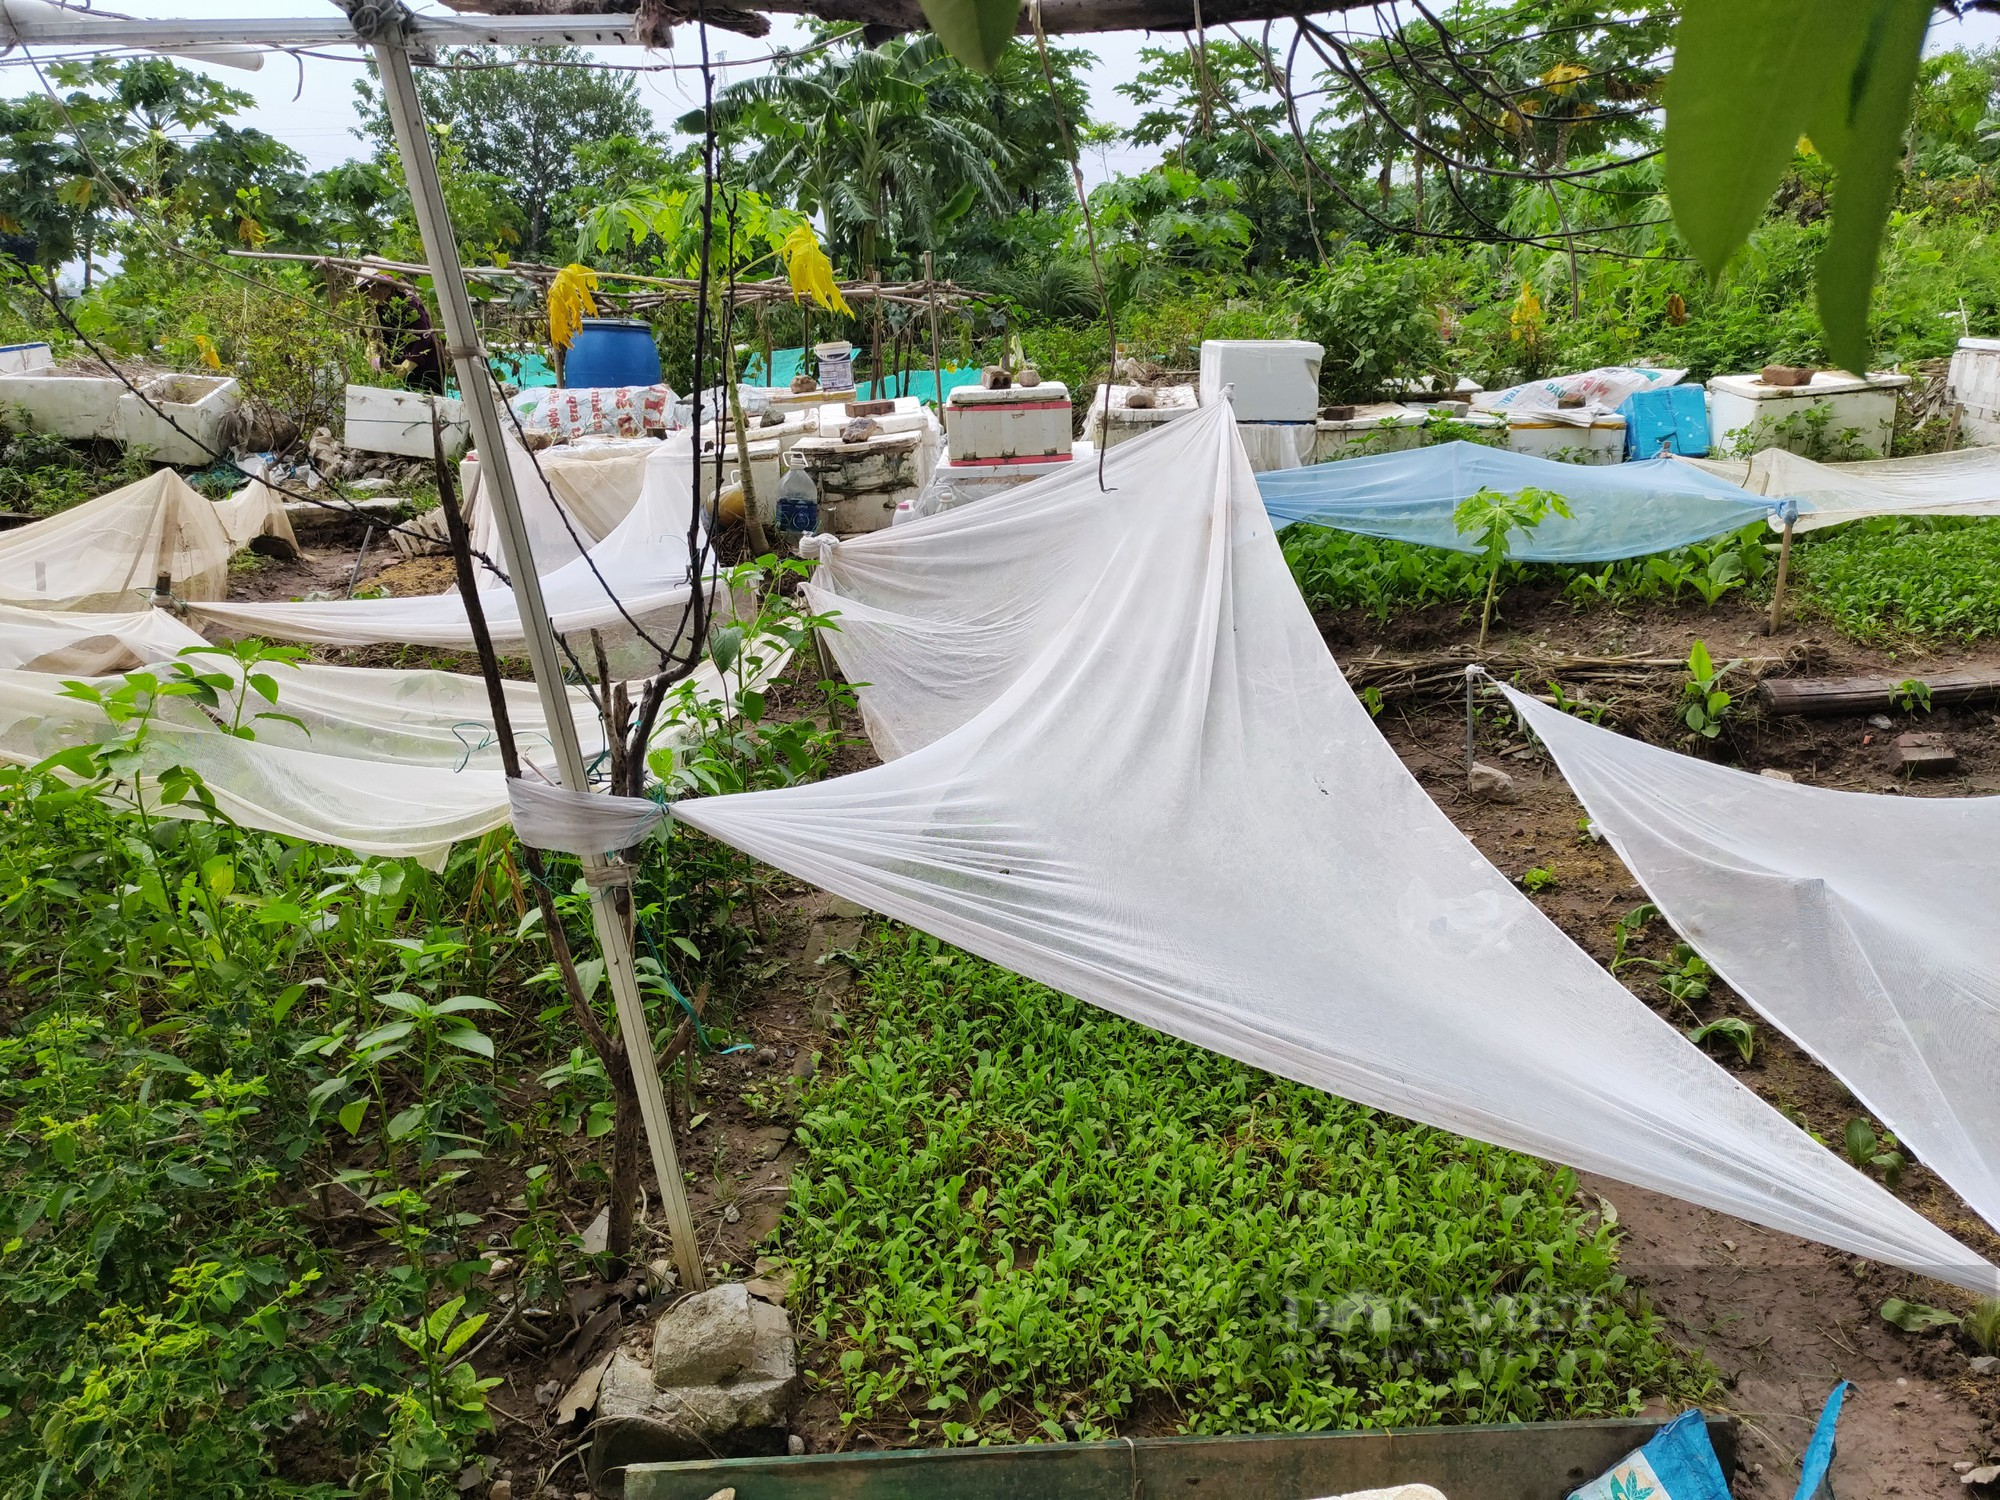 Sau phốt rau sạch rởm, dân chung cư ở Hà Nội phạt cỏ dại, khai hoang cuốc đất trồng rau - Ảnh 2.